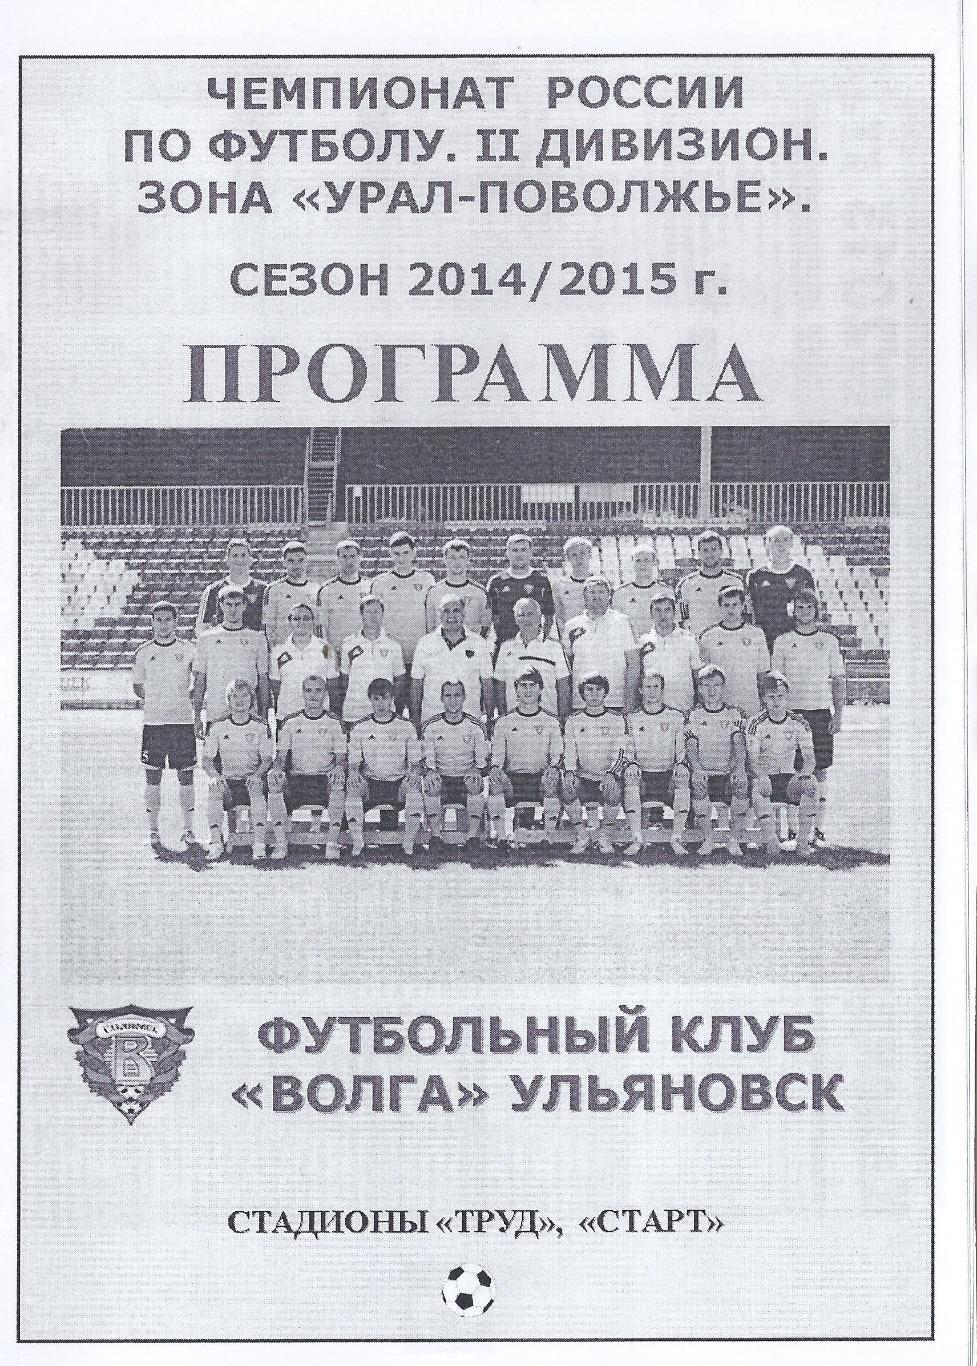 2014/2015 - Волга Ульяновск - Спартак Йошкар-Ола